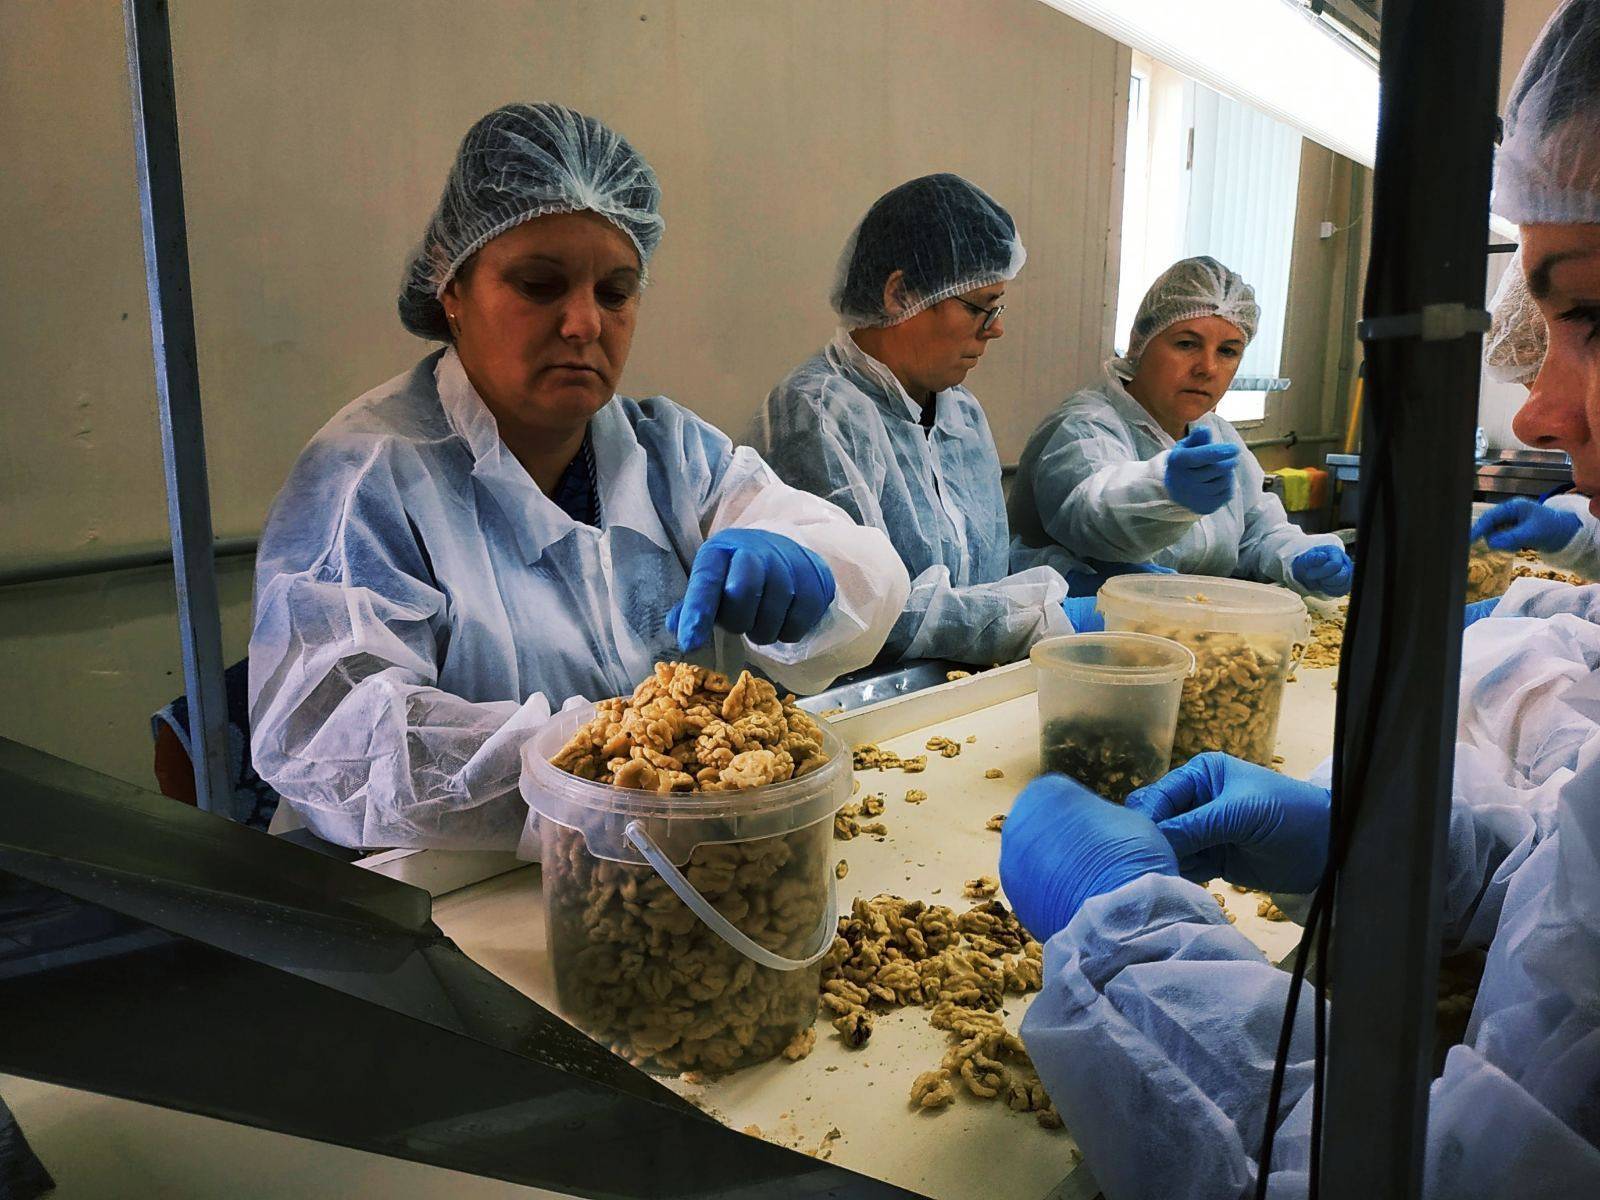 Ореховый бизнес в украине, посадка орехового сада как бизнес — пропозиция